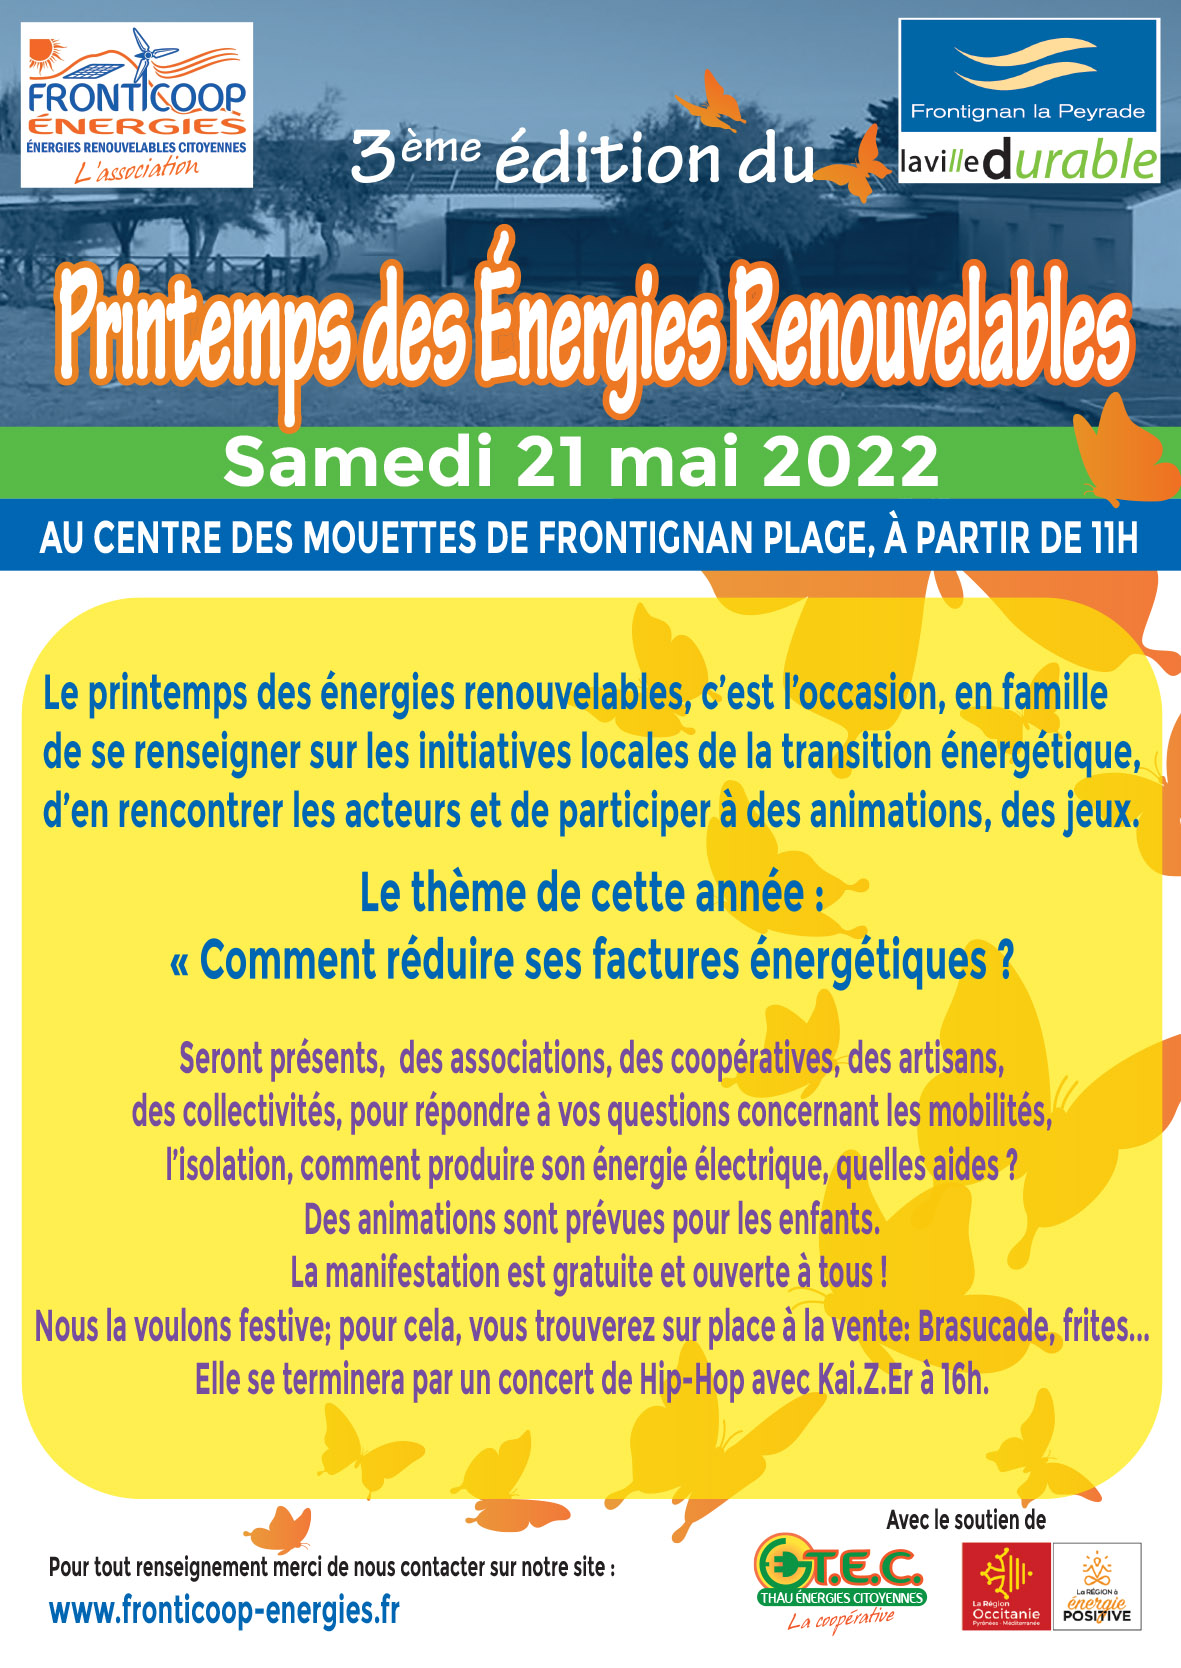 FRONTICOOP ÉNERGIES organise la 3eme édition du Printemps des Énergies Renouvelables